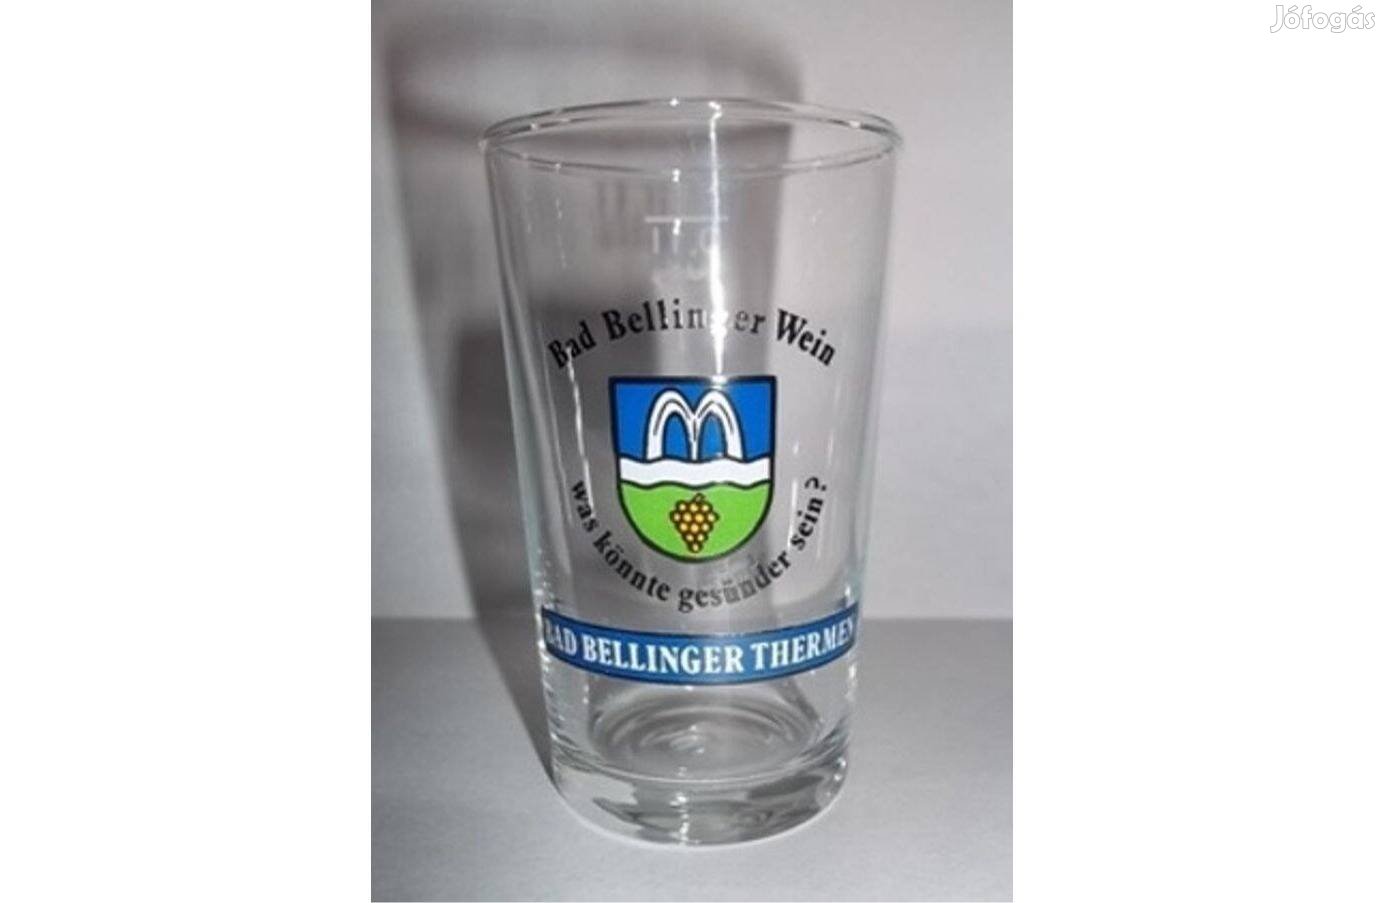 Bad Bellinger Wein pohár